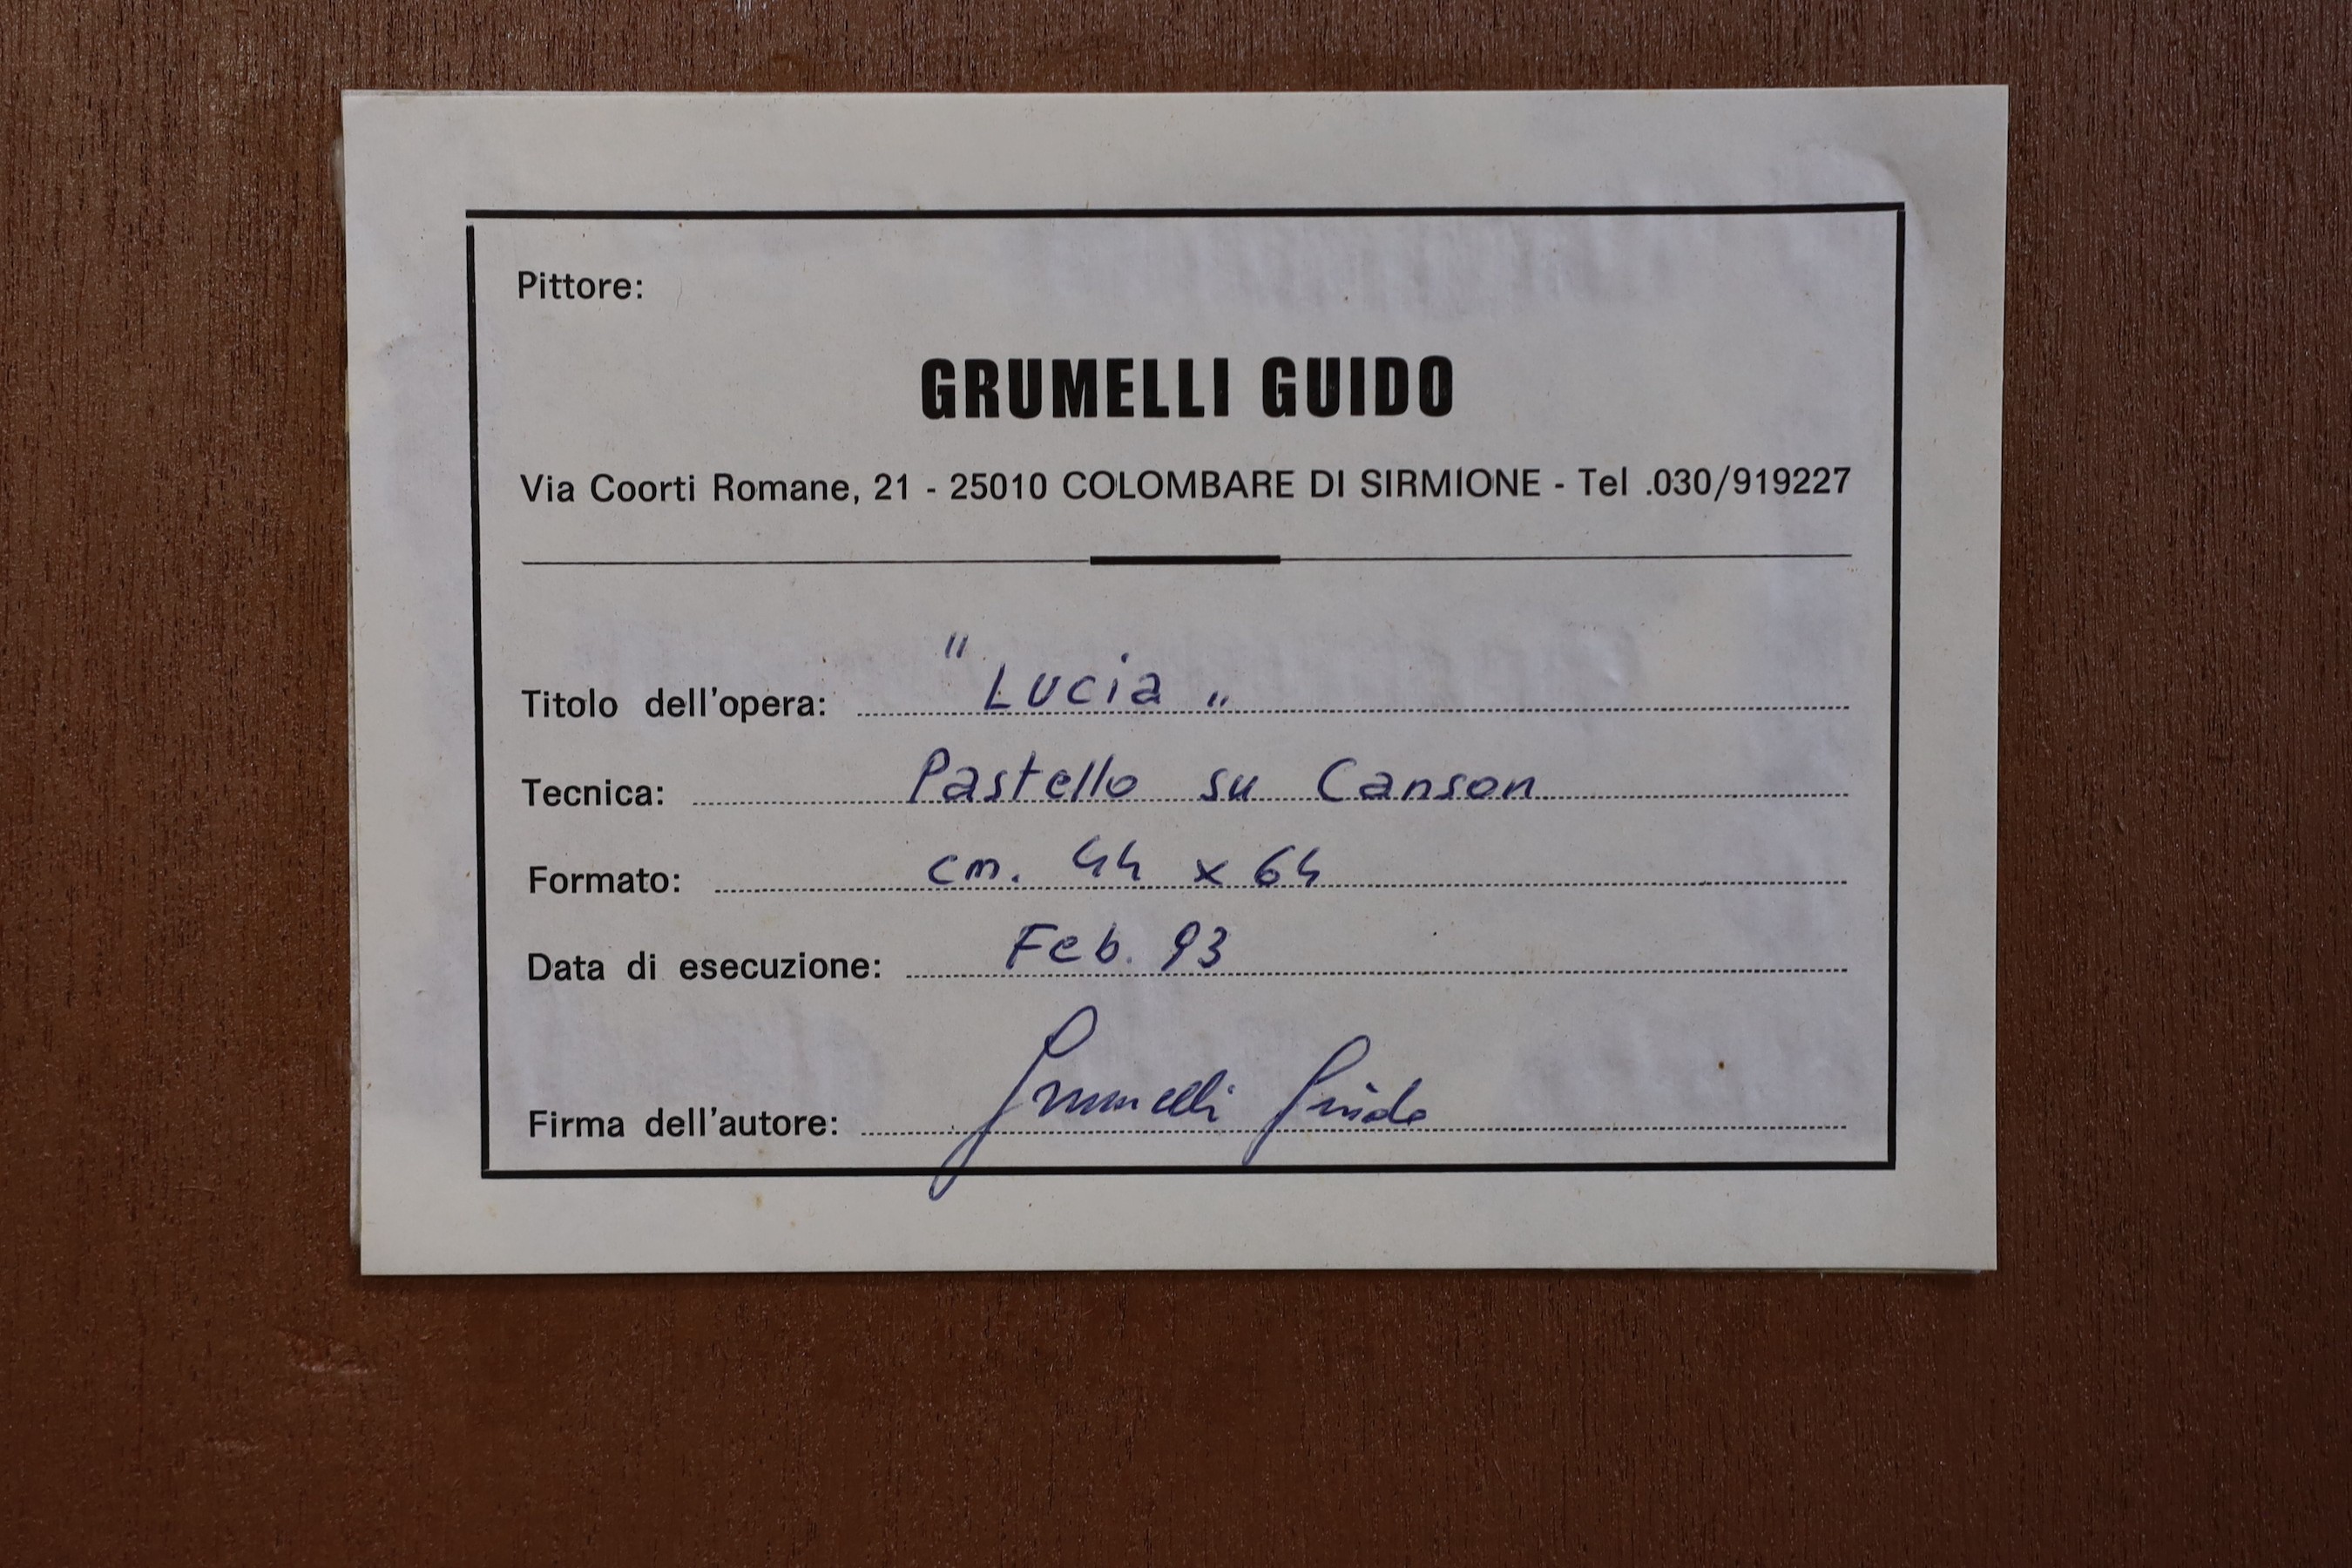 Guido Grumeli, 'Lucia' and 'La Modella', pastel on card, 63 x 43cm